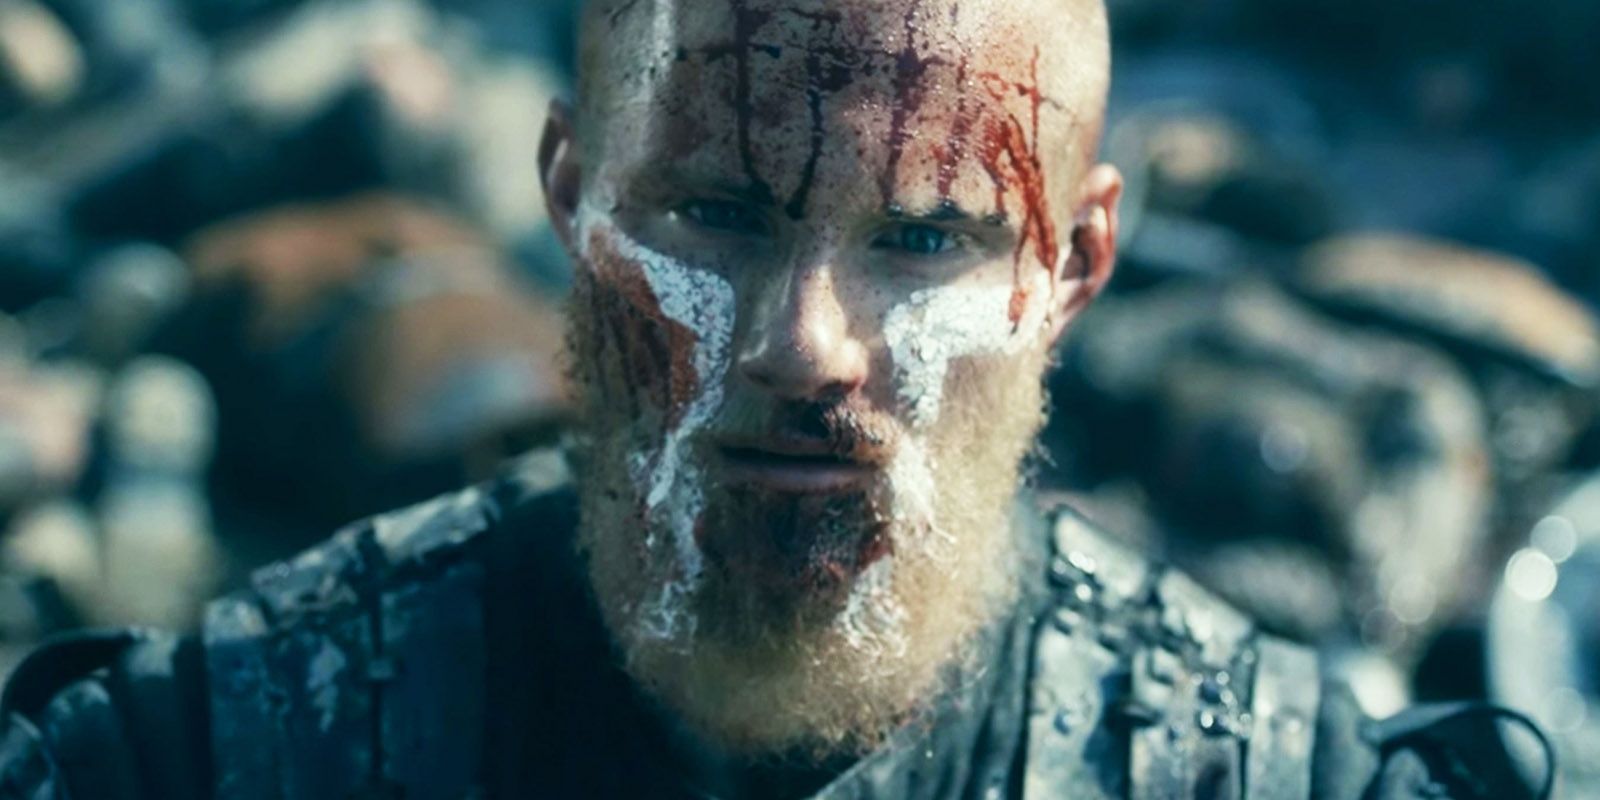 Bjorn con pintura y sangre en la cara en Vikingos